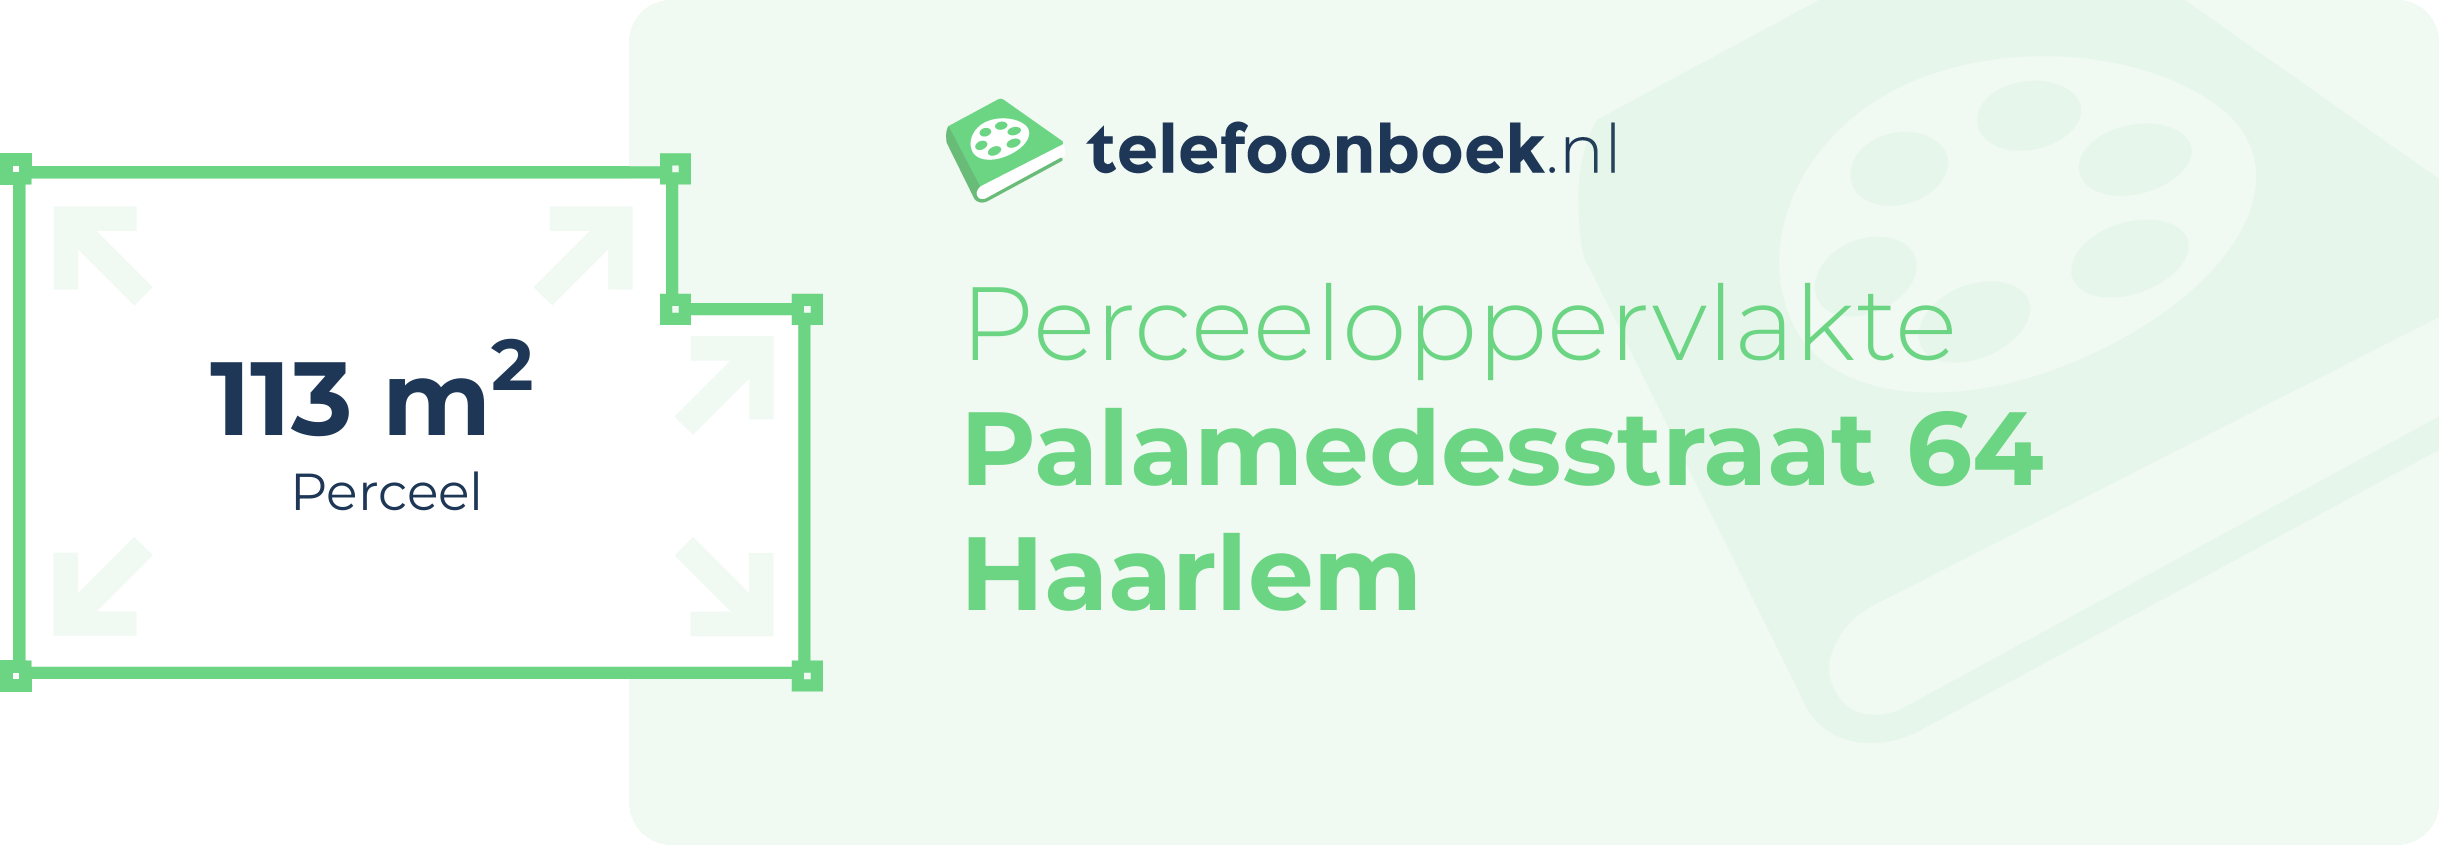 Perceeloppervlakte Palamedesstraat 64 Haarlem